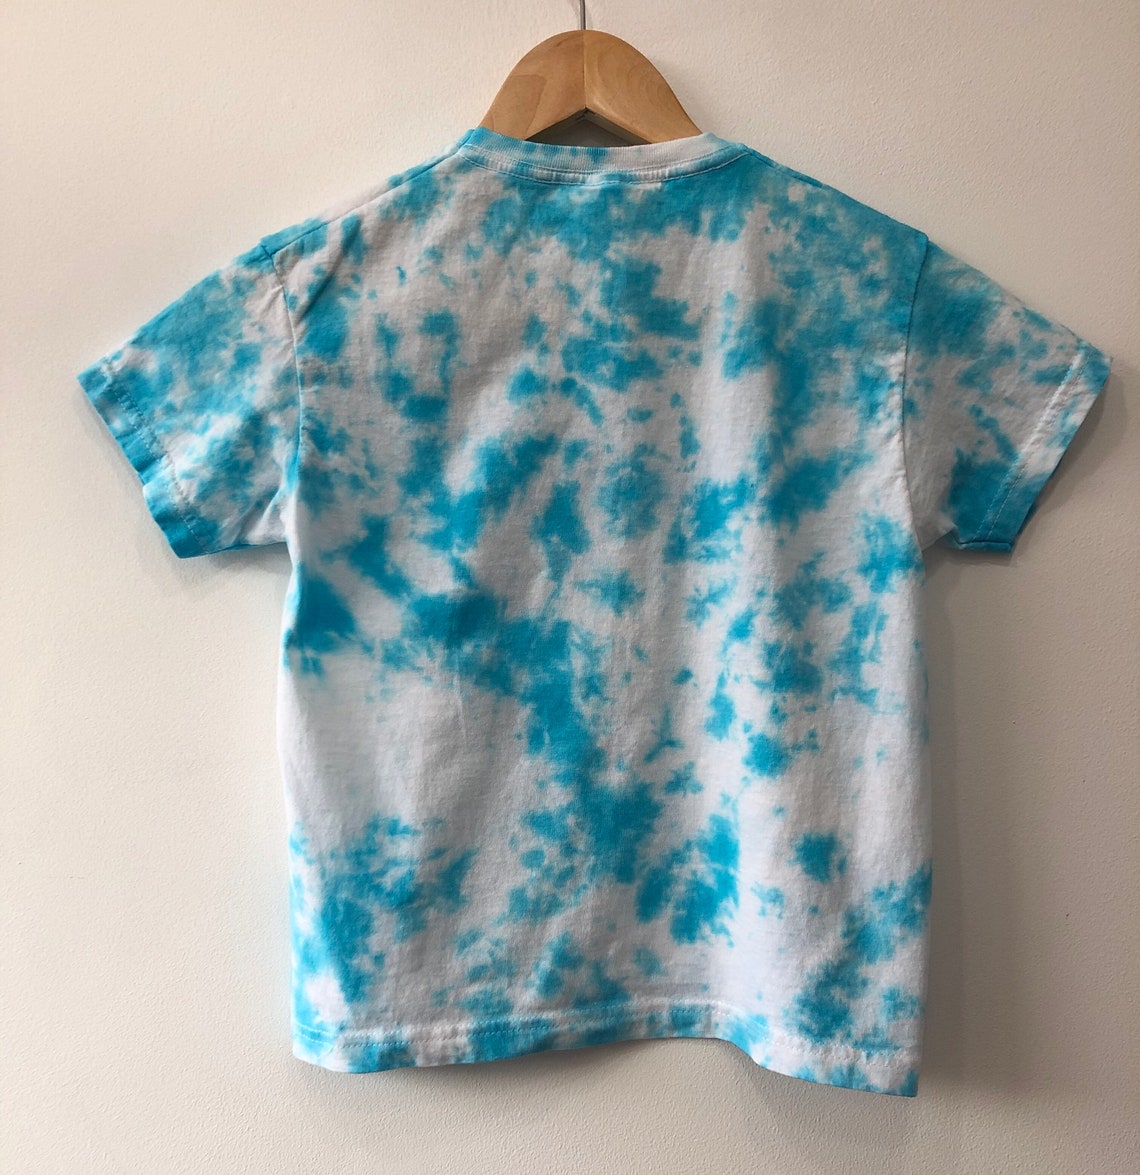 Kids Tie Dye T-Shirt Blue Tie Dye Unisex | Etsy